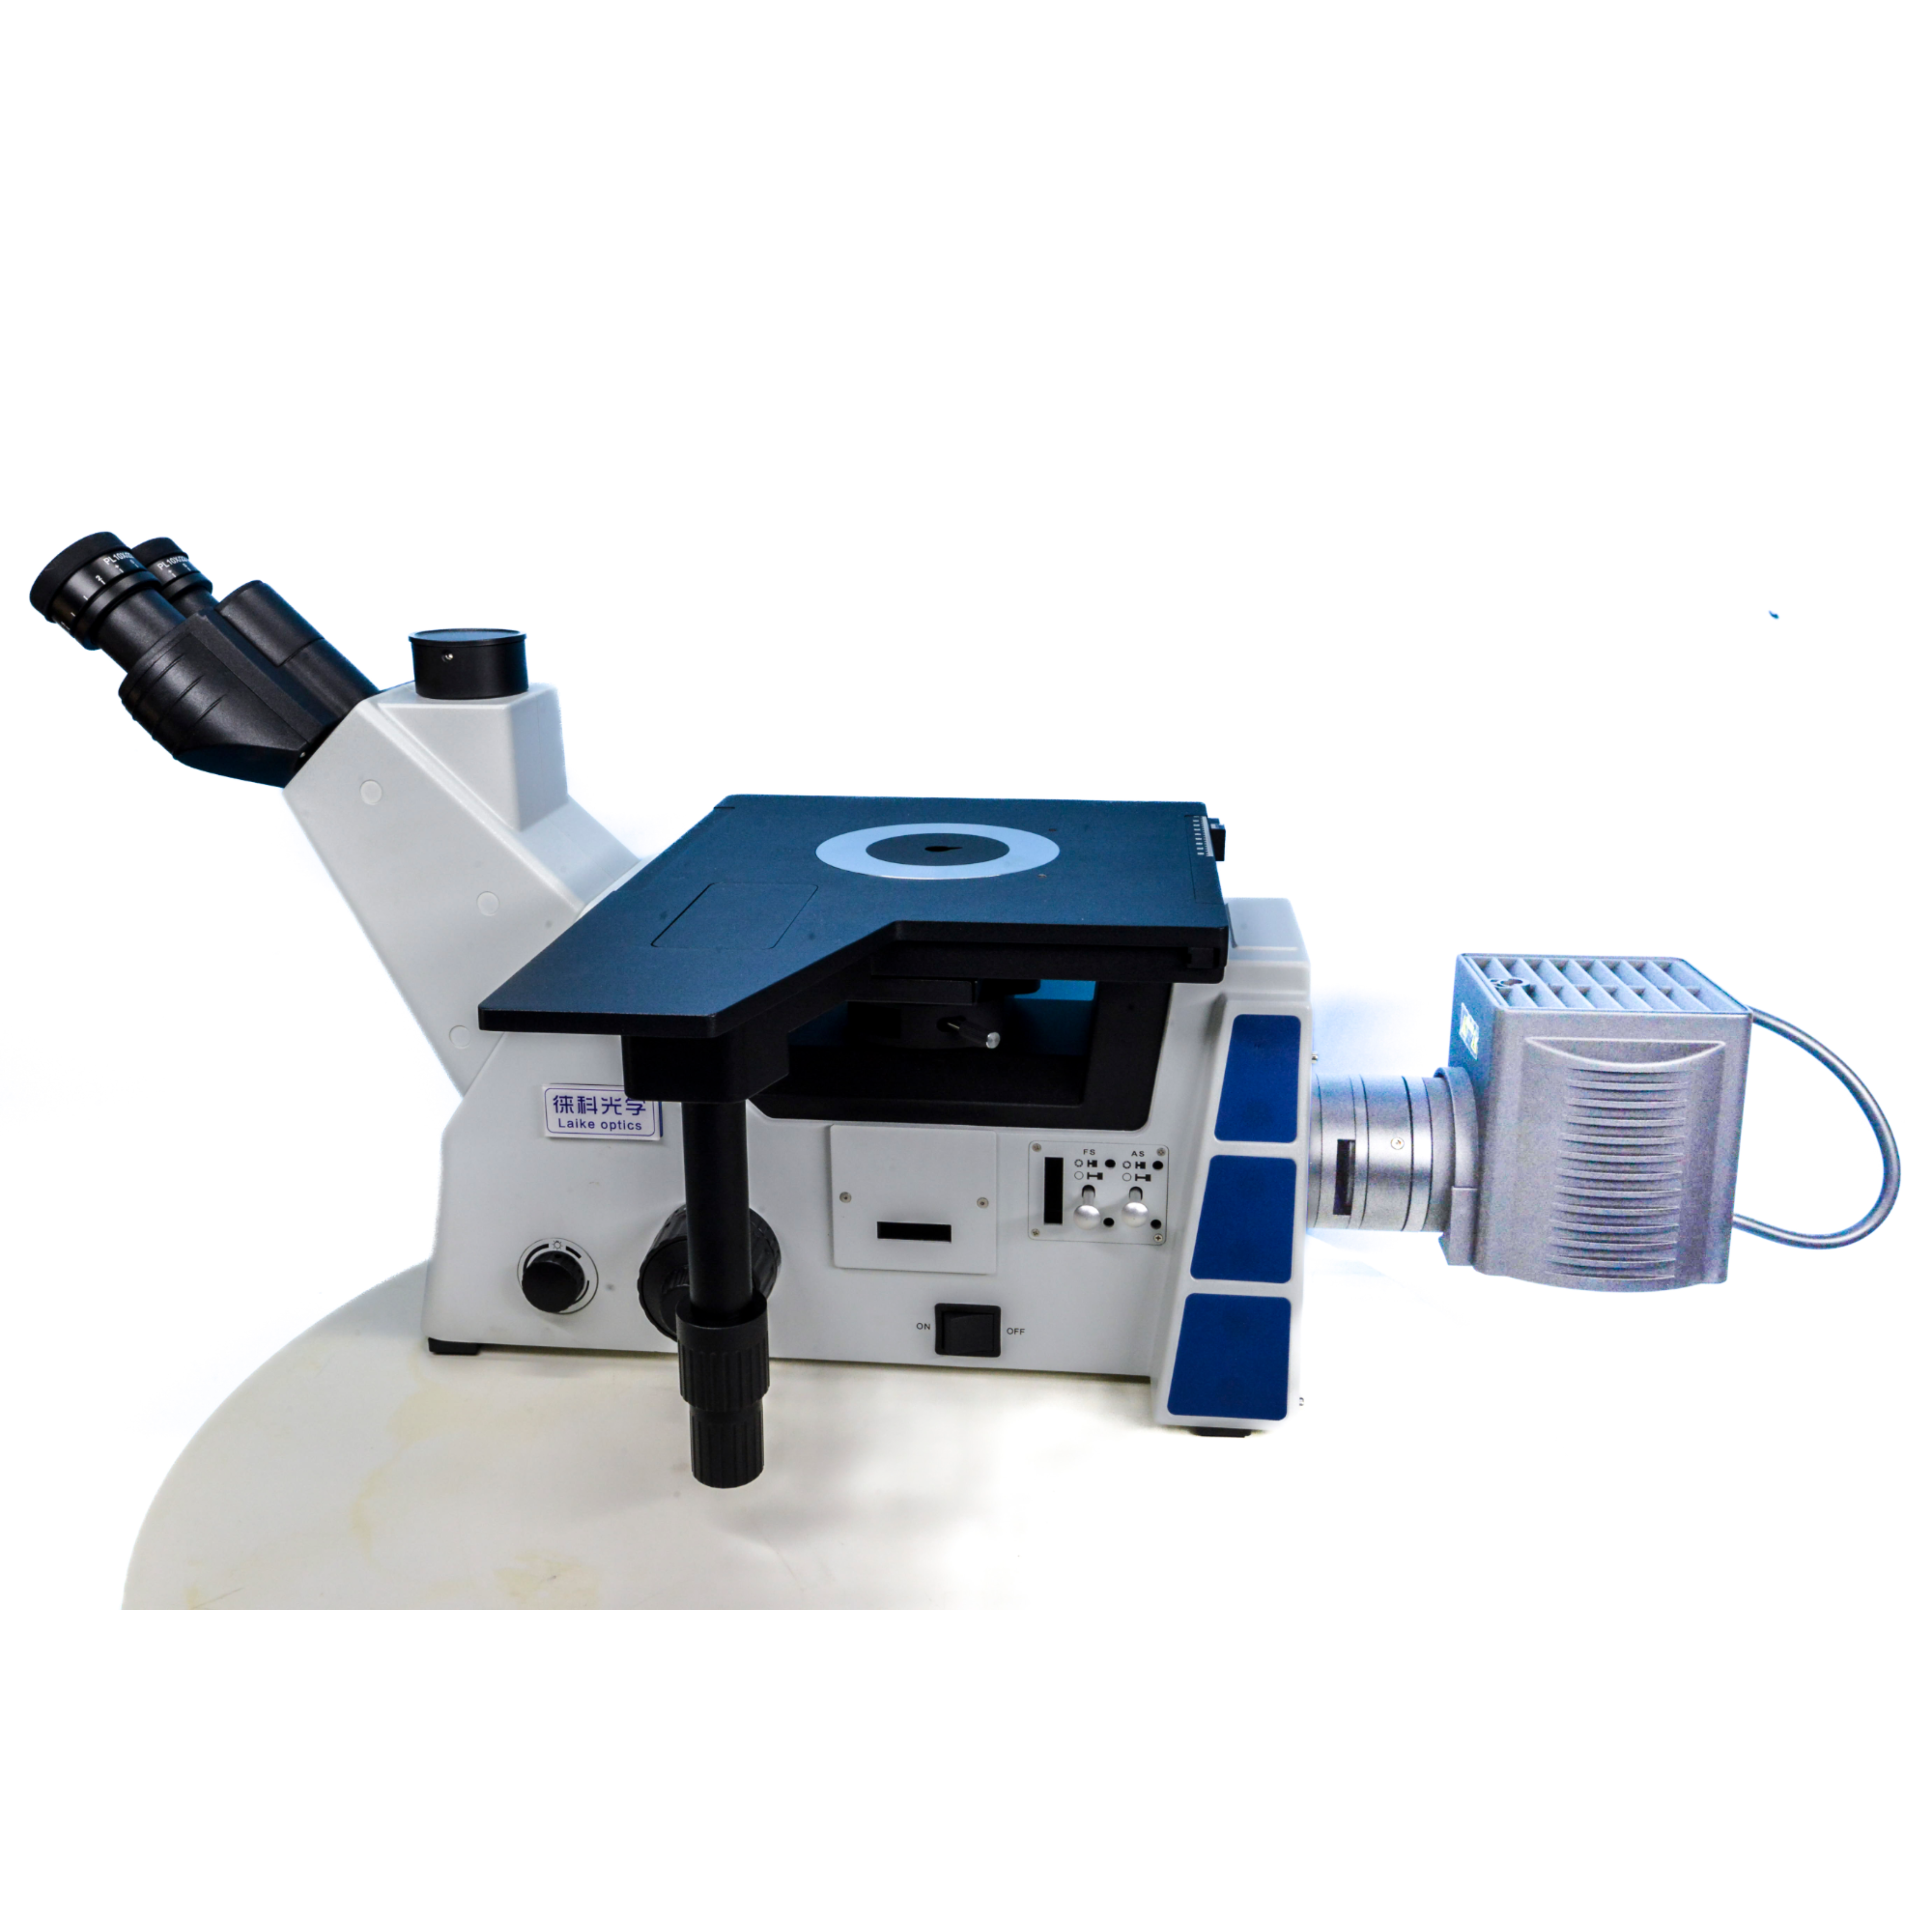 倒置金相显微镜 研究级倒置金相显微镜LK-90M